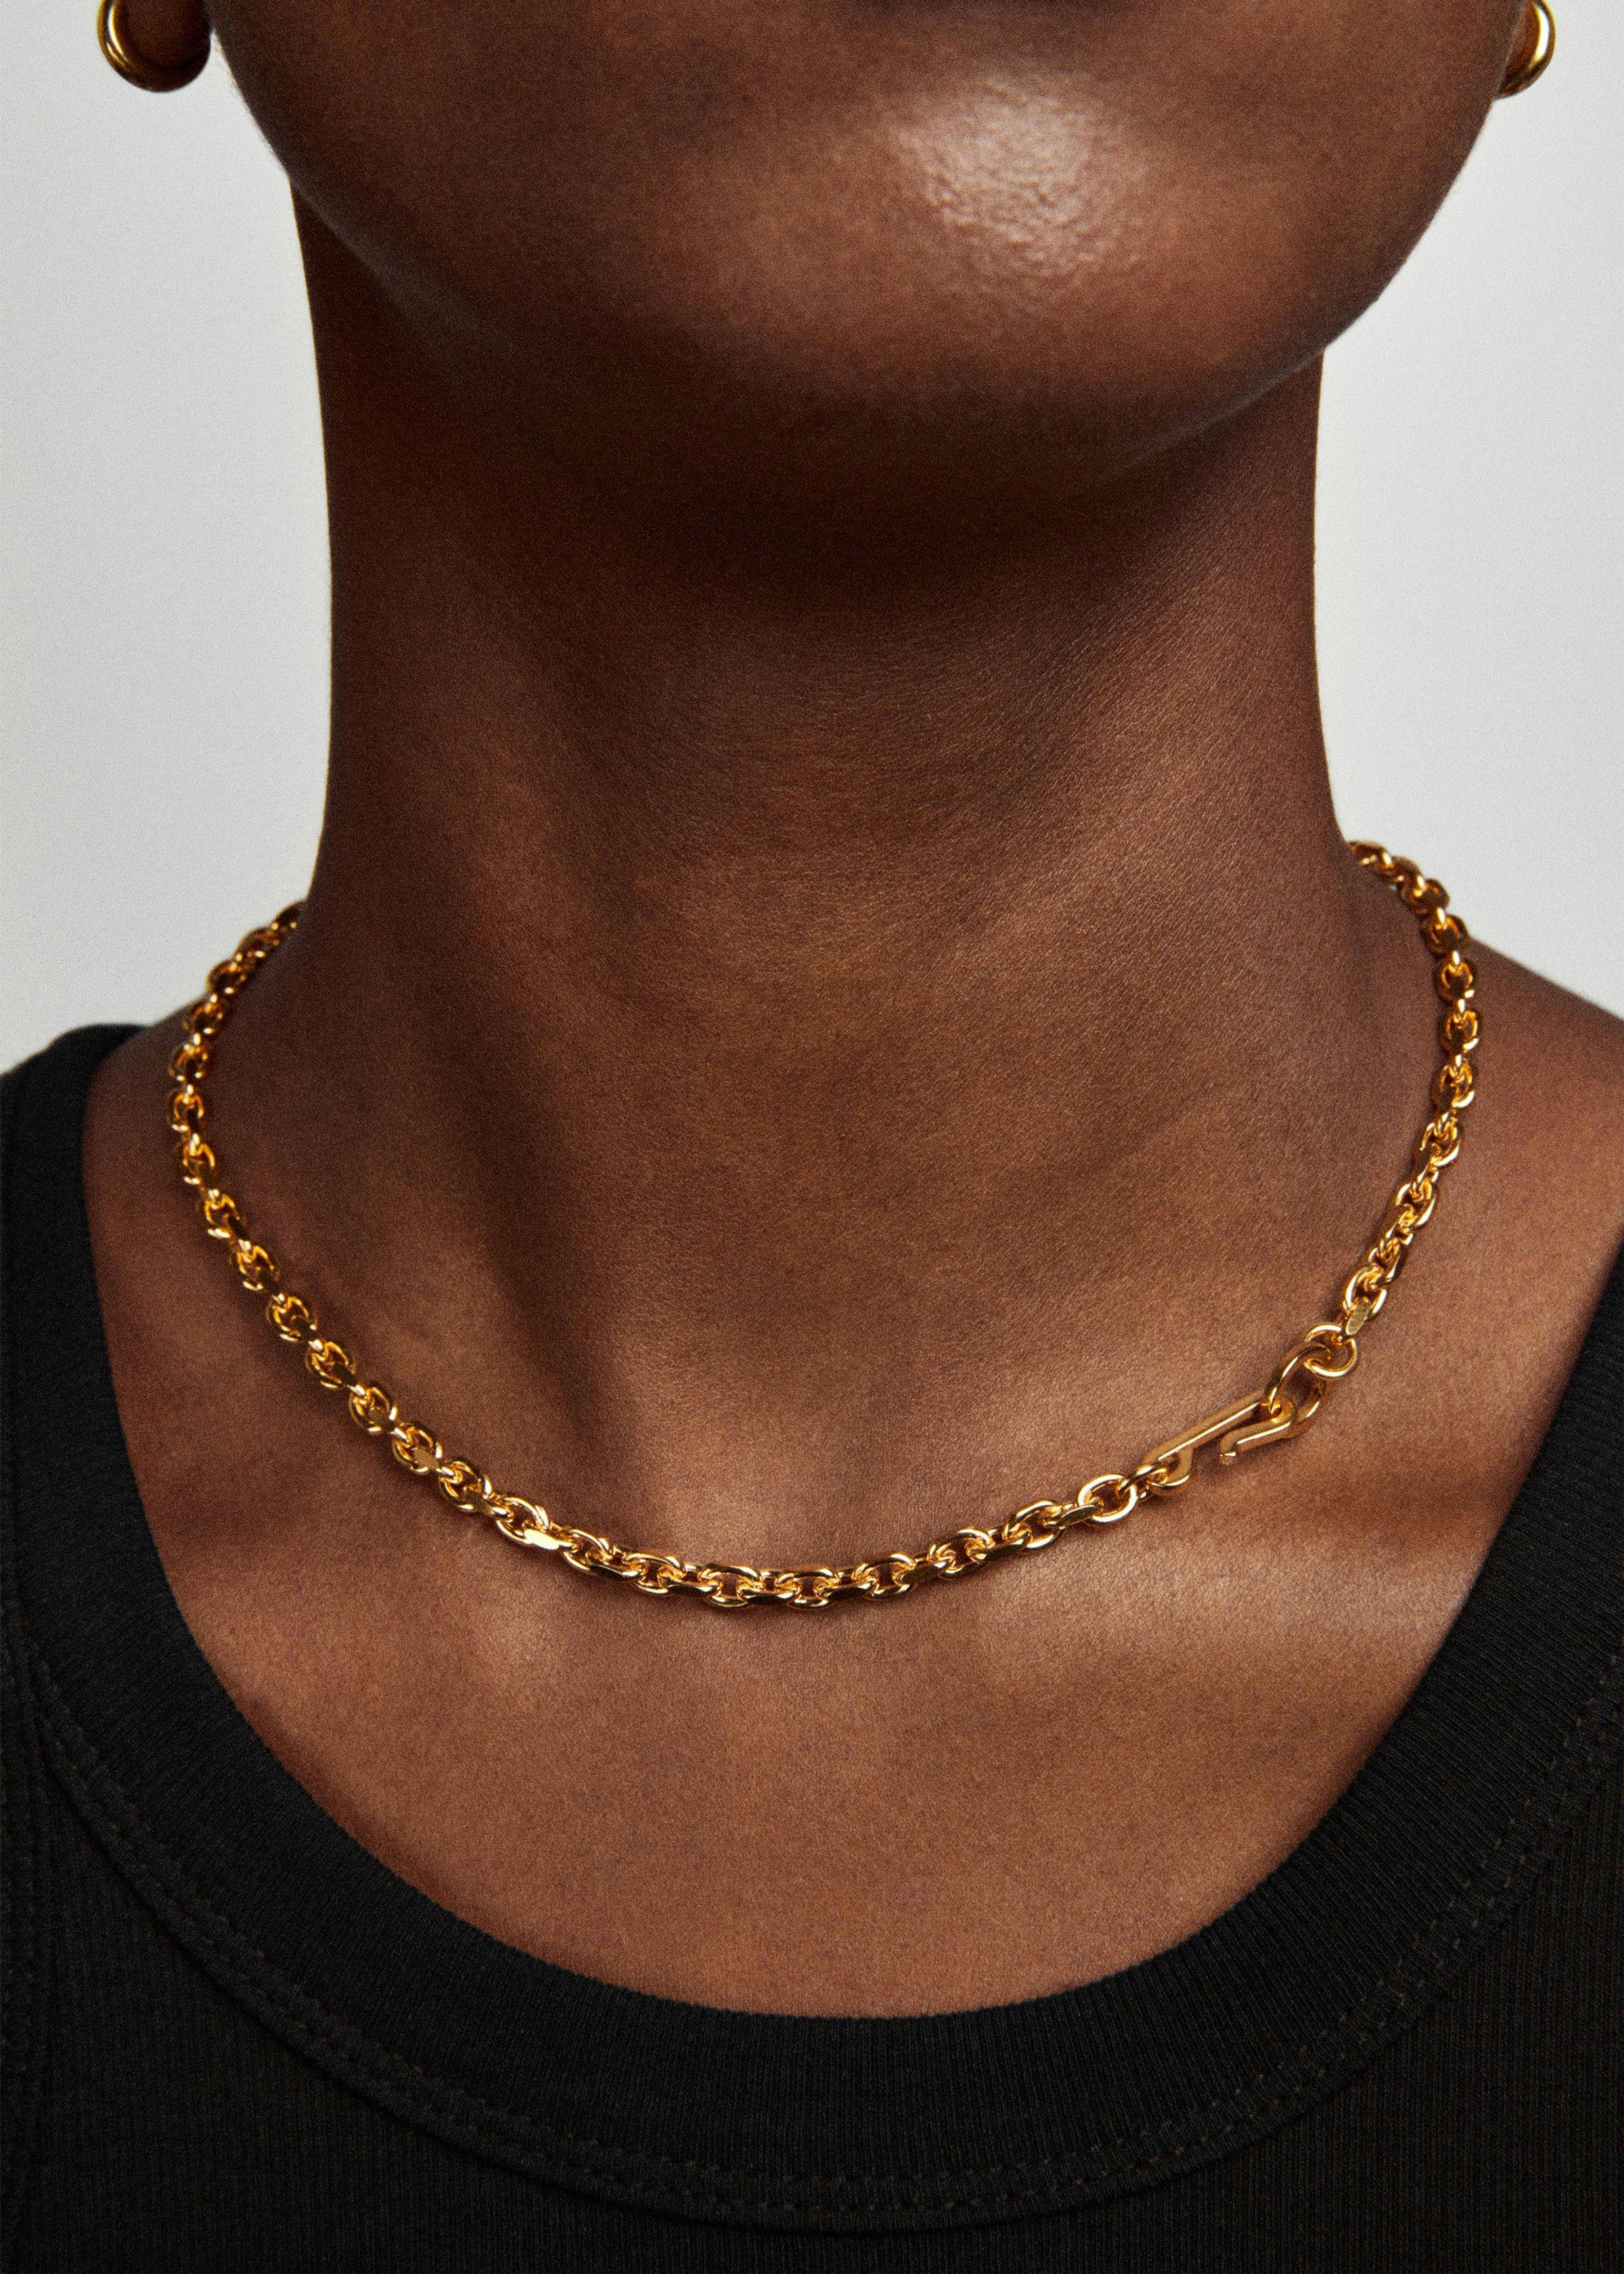 Anchor necklace